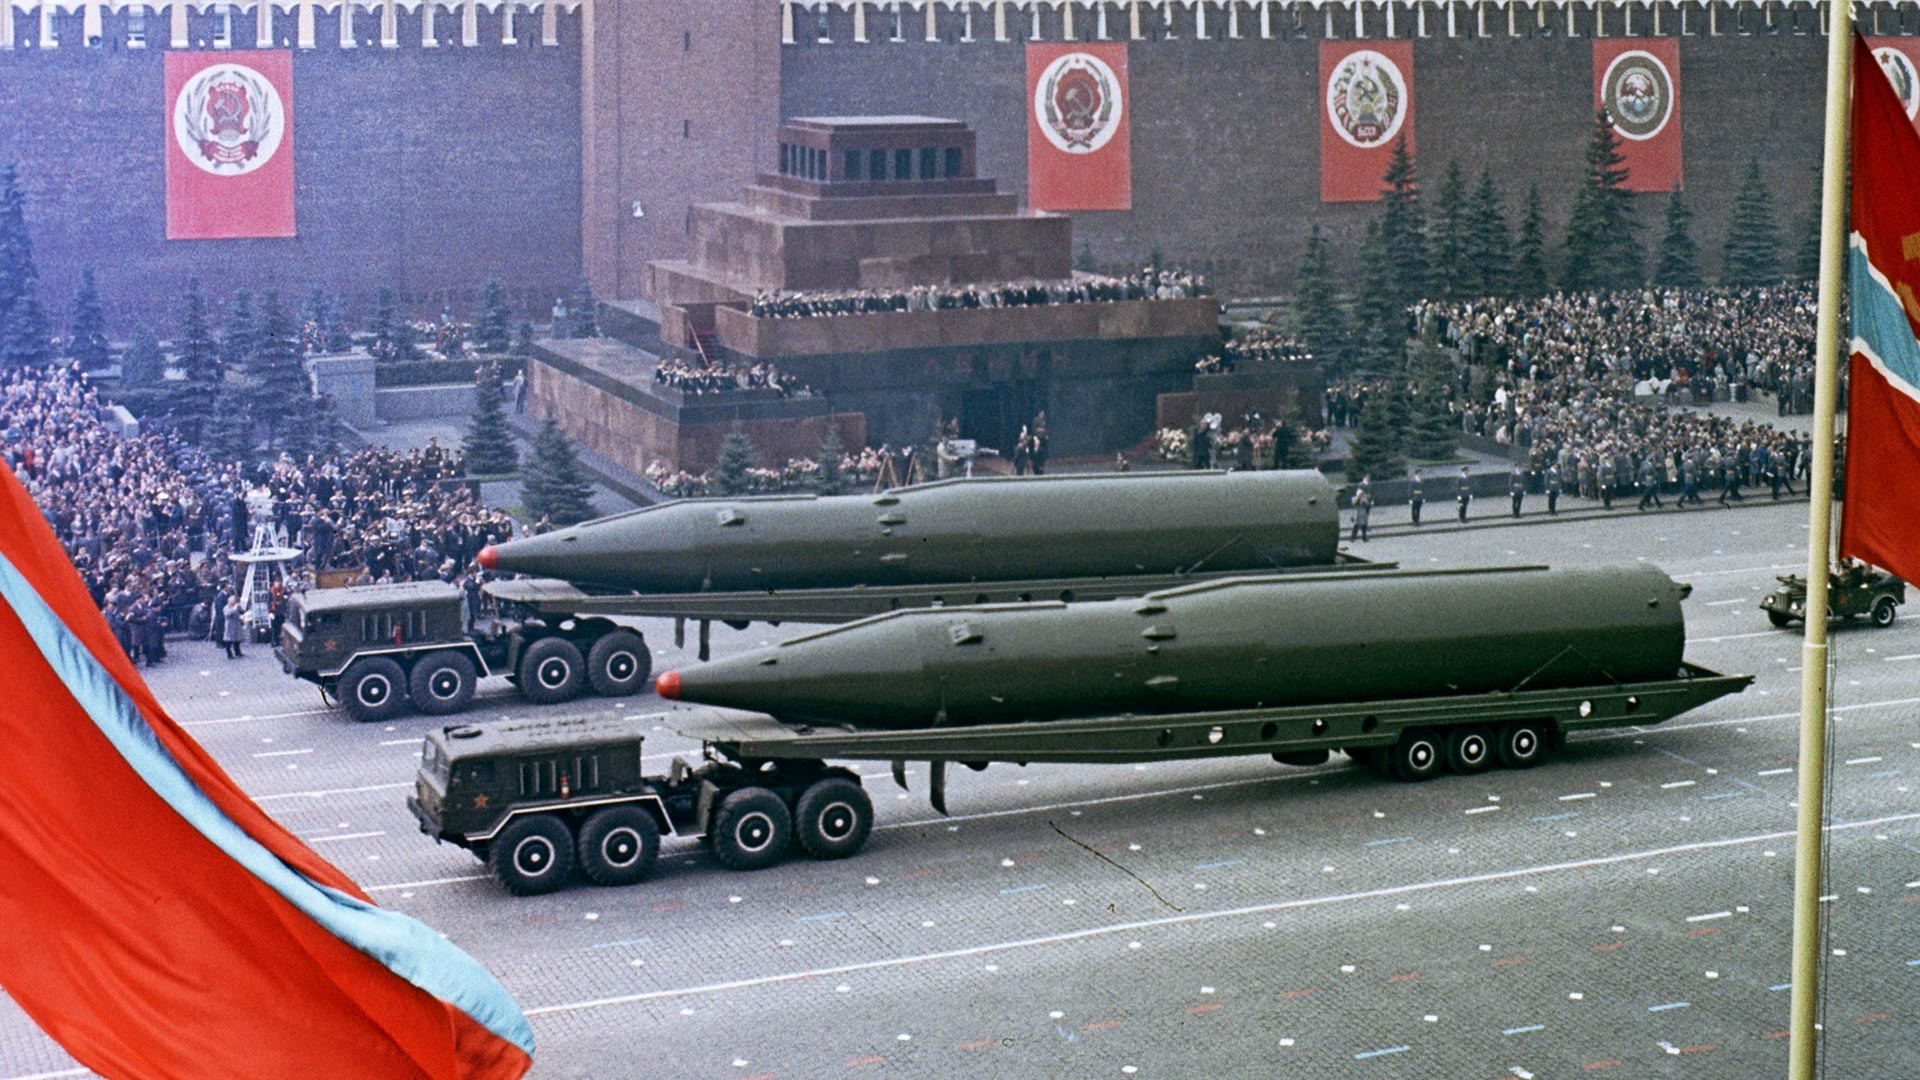 Војна парада на Црвеном тргу поводом 20-годишњице Победе у Великом отаџбинском рату 1941-1945.